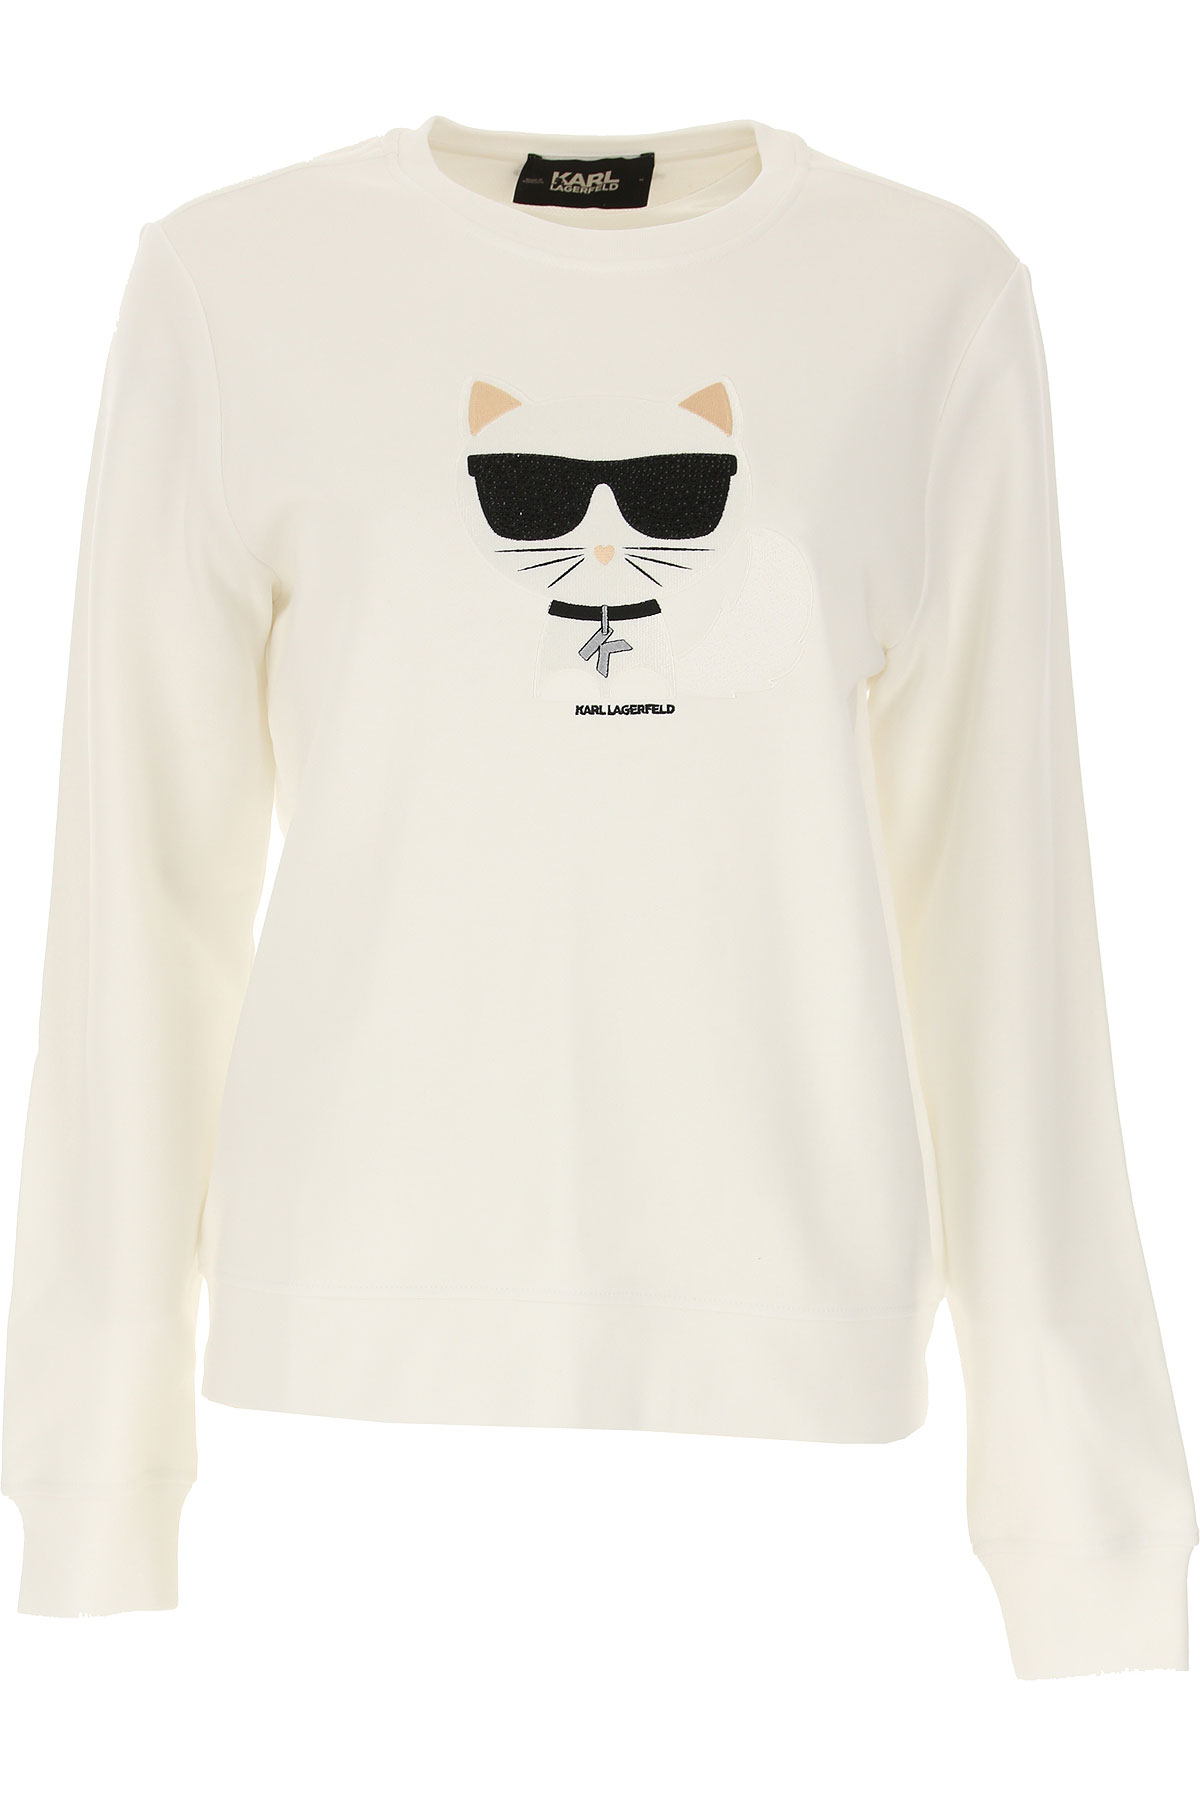 Karl Lagerfeld Sweatshirt für Damen, Kapuzenpulli, Hoodie, Sweats Günstig im Sale, Weiss, Baumwolle, 2017, 40 44